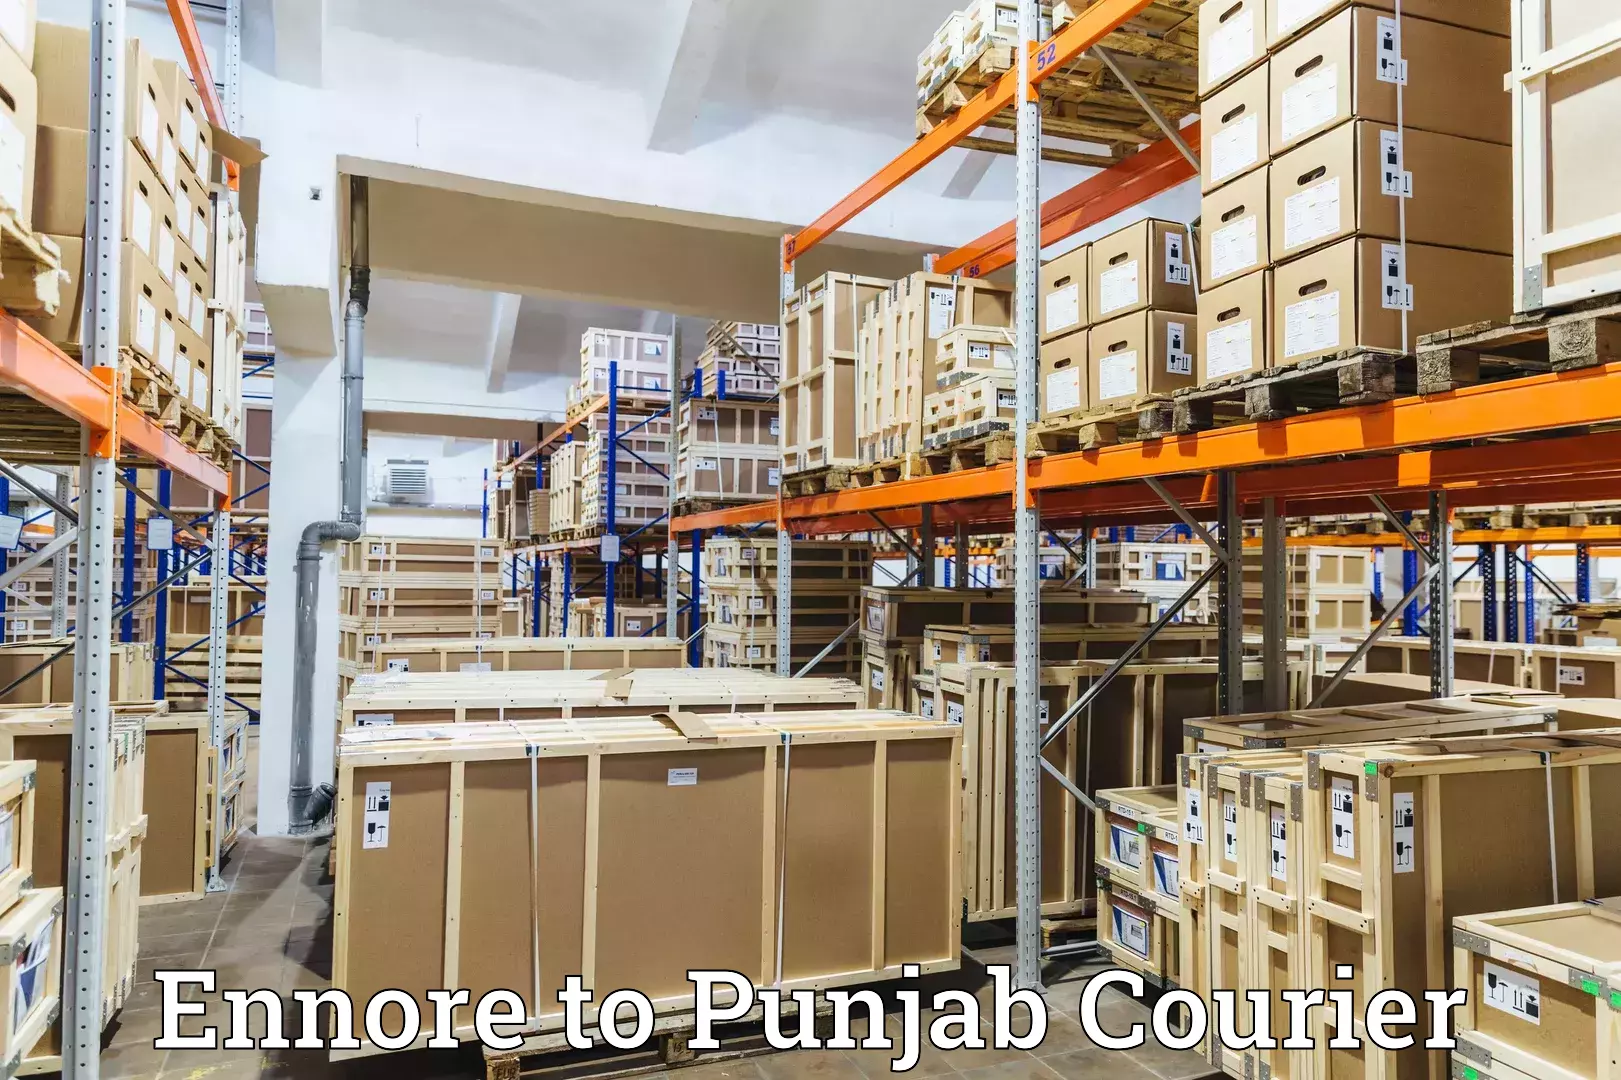 Digital courier platforms Ennore to Punjab